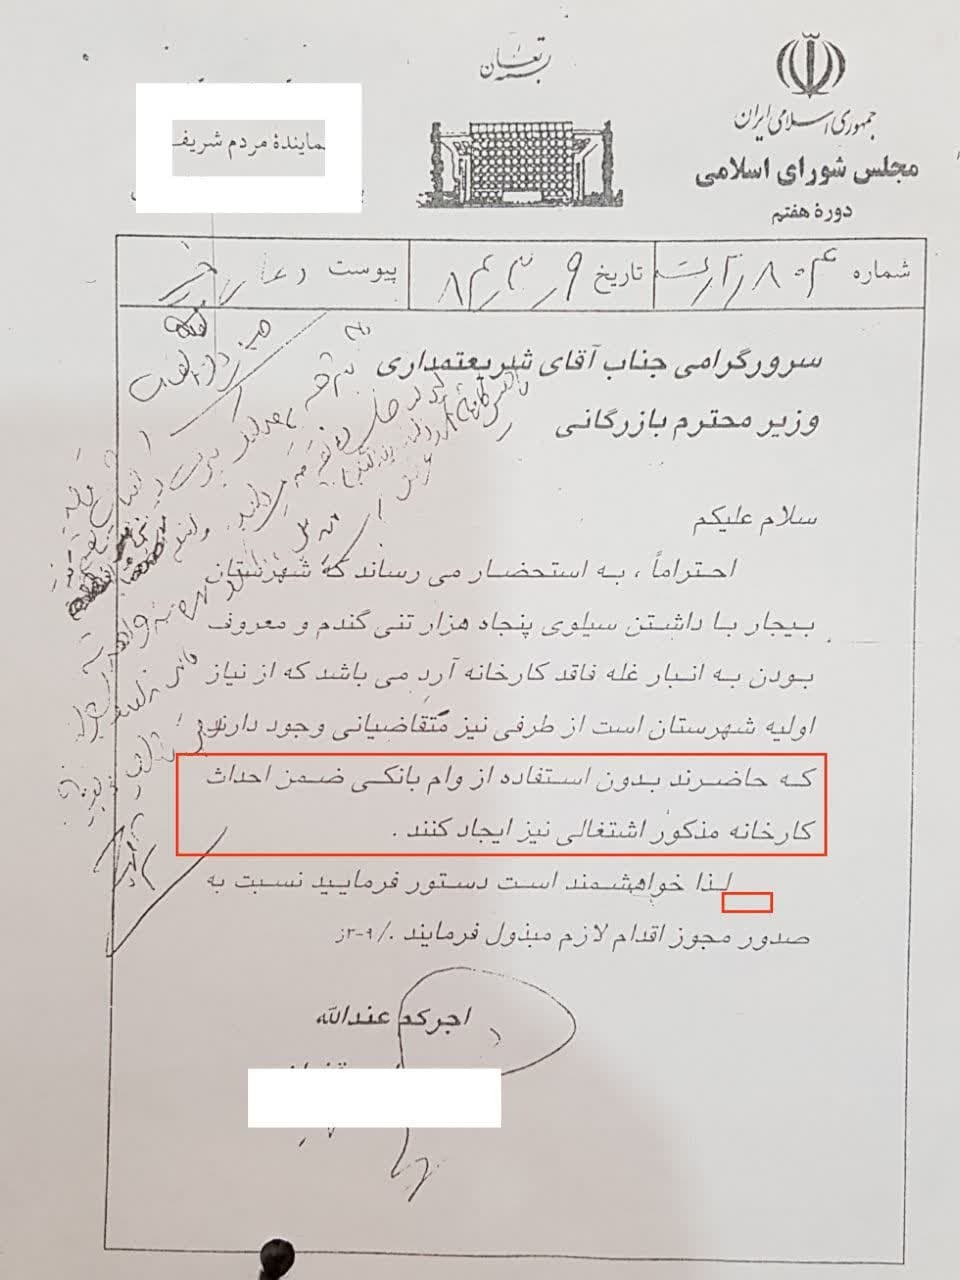 نماینده سابق مجلس به اتهام ارتشا در مجتمع قضایی قدس تهران تحت تعقیب قرارگرفت